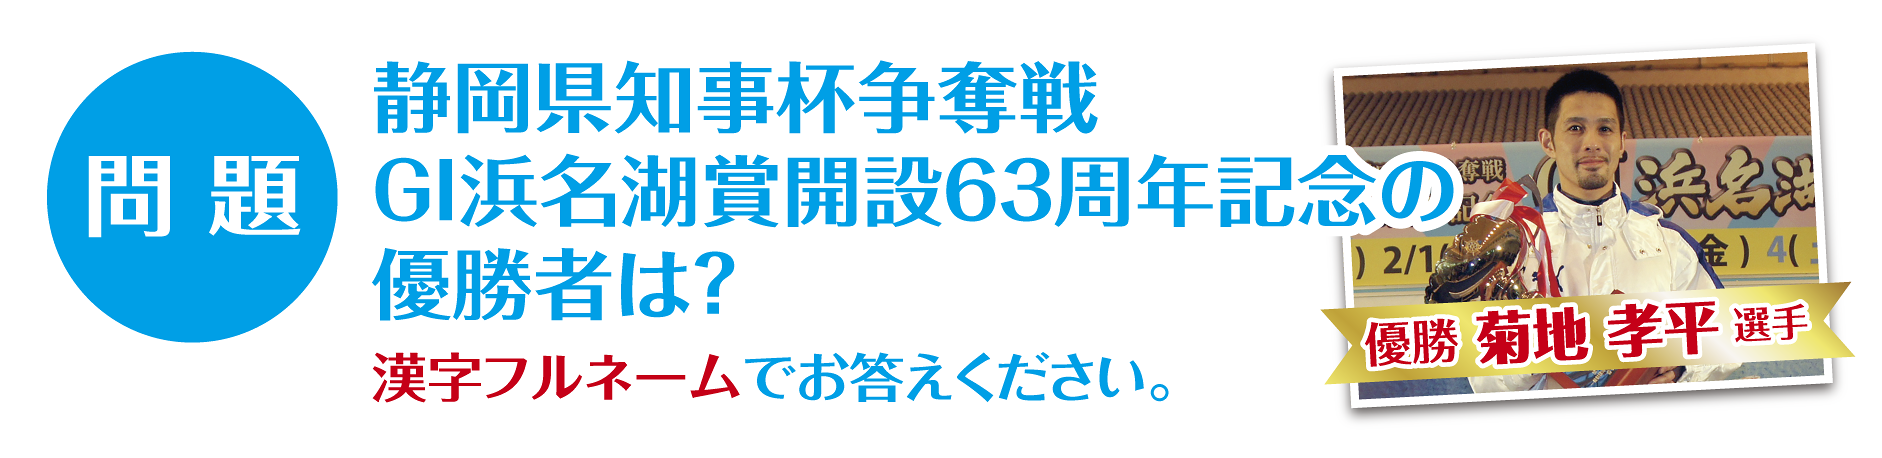 問題 静岡県知事杯争奪戦GI浜名湖賞開設63周年記念の優勝者は？　漢字フルネームでお答えください。